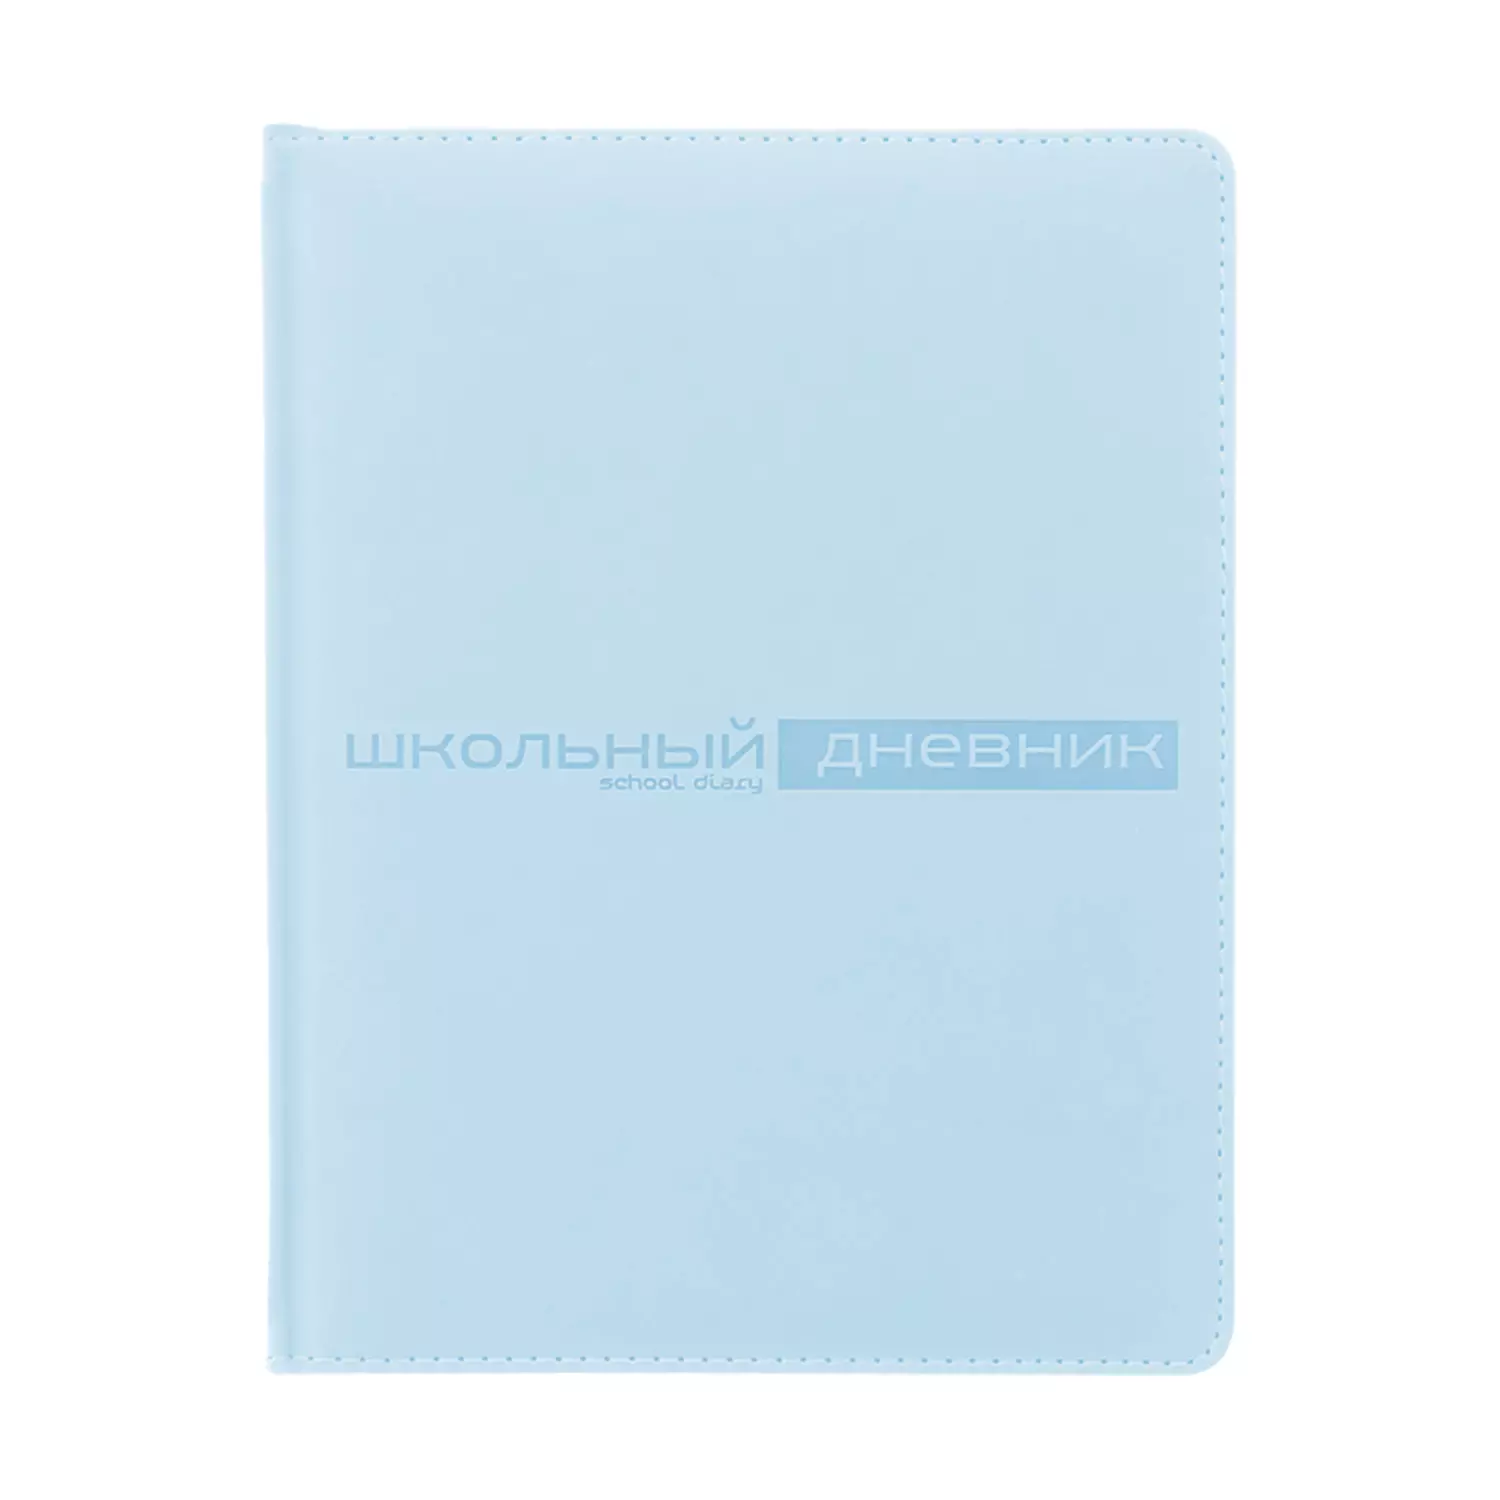 Дневник школьный А5 (170 х 220 мм) VELVET зефирный голубой 48 л.